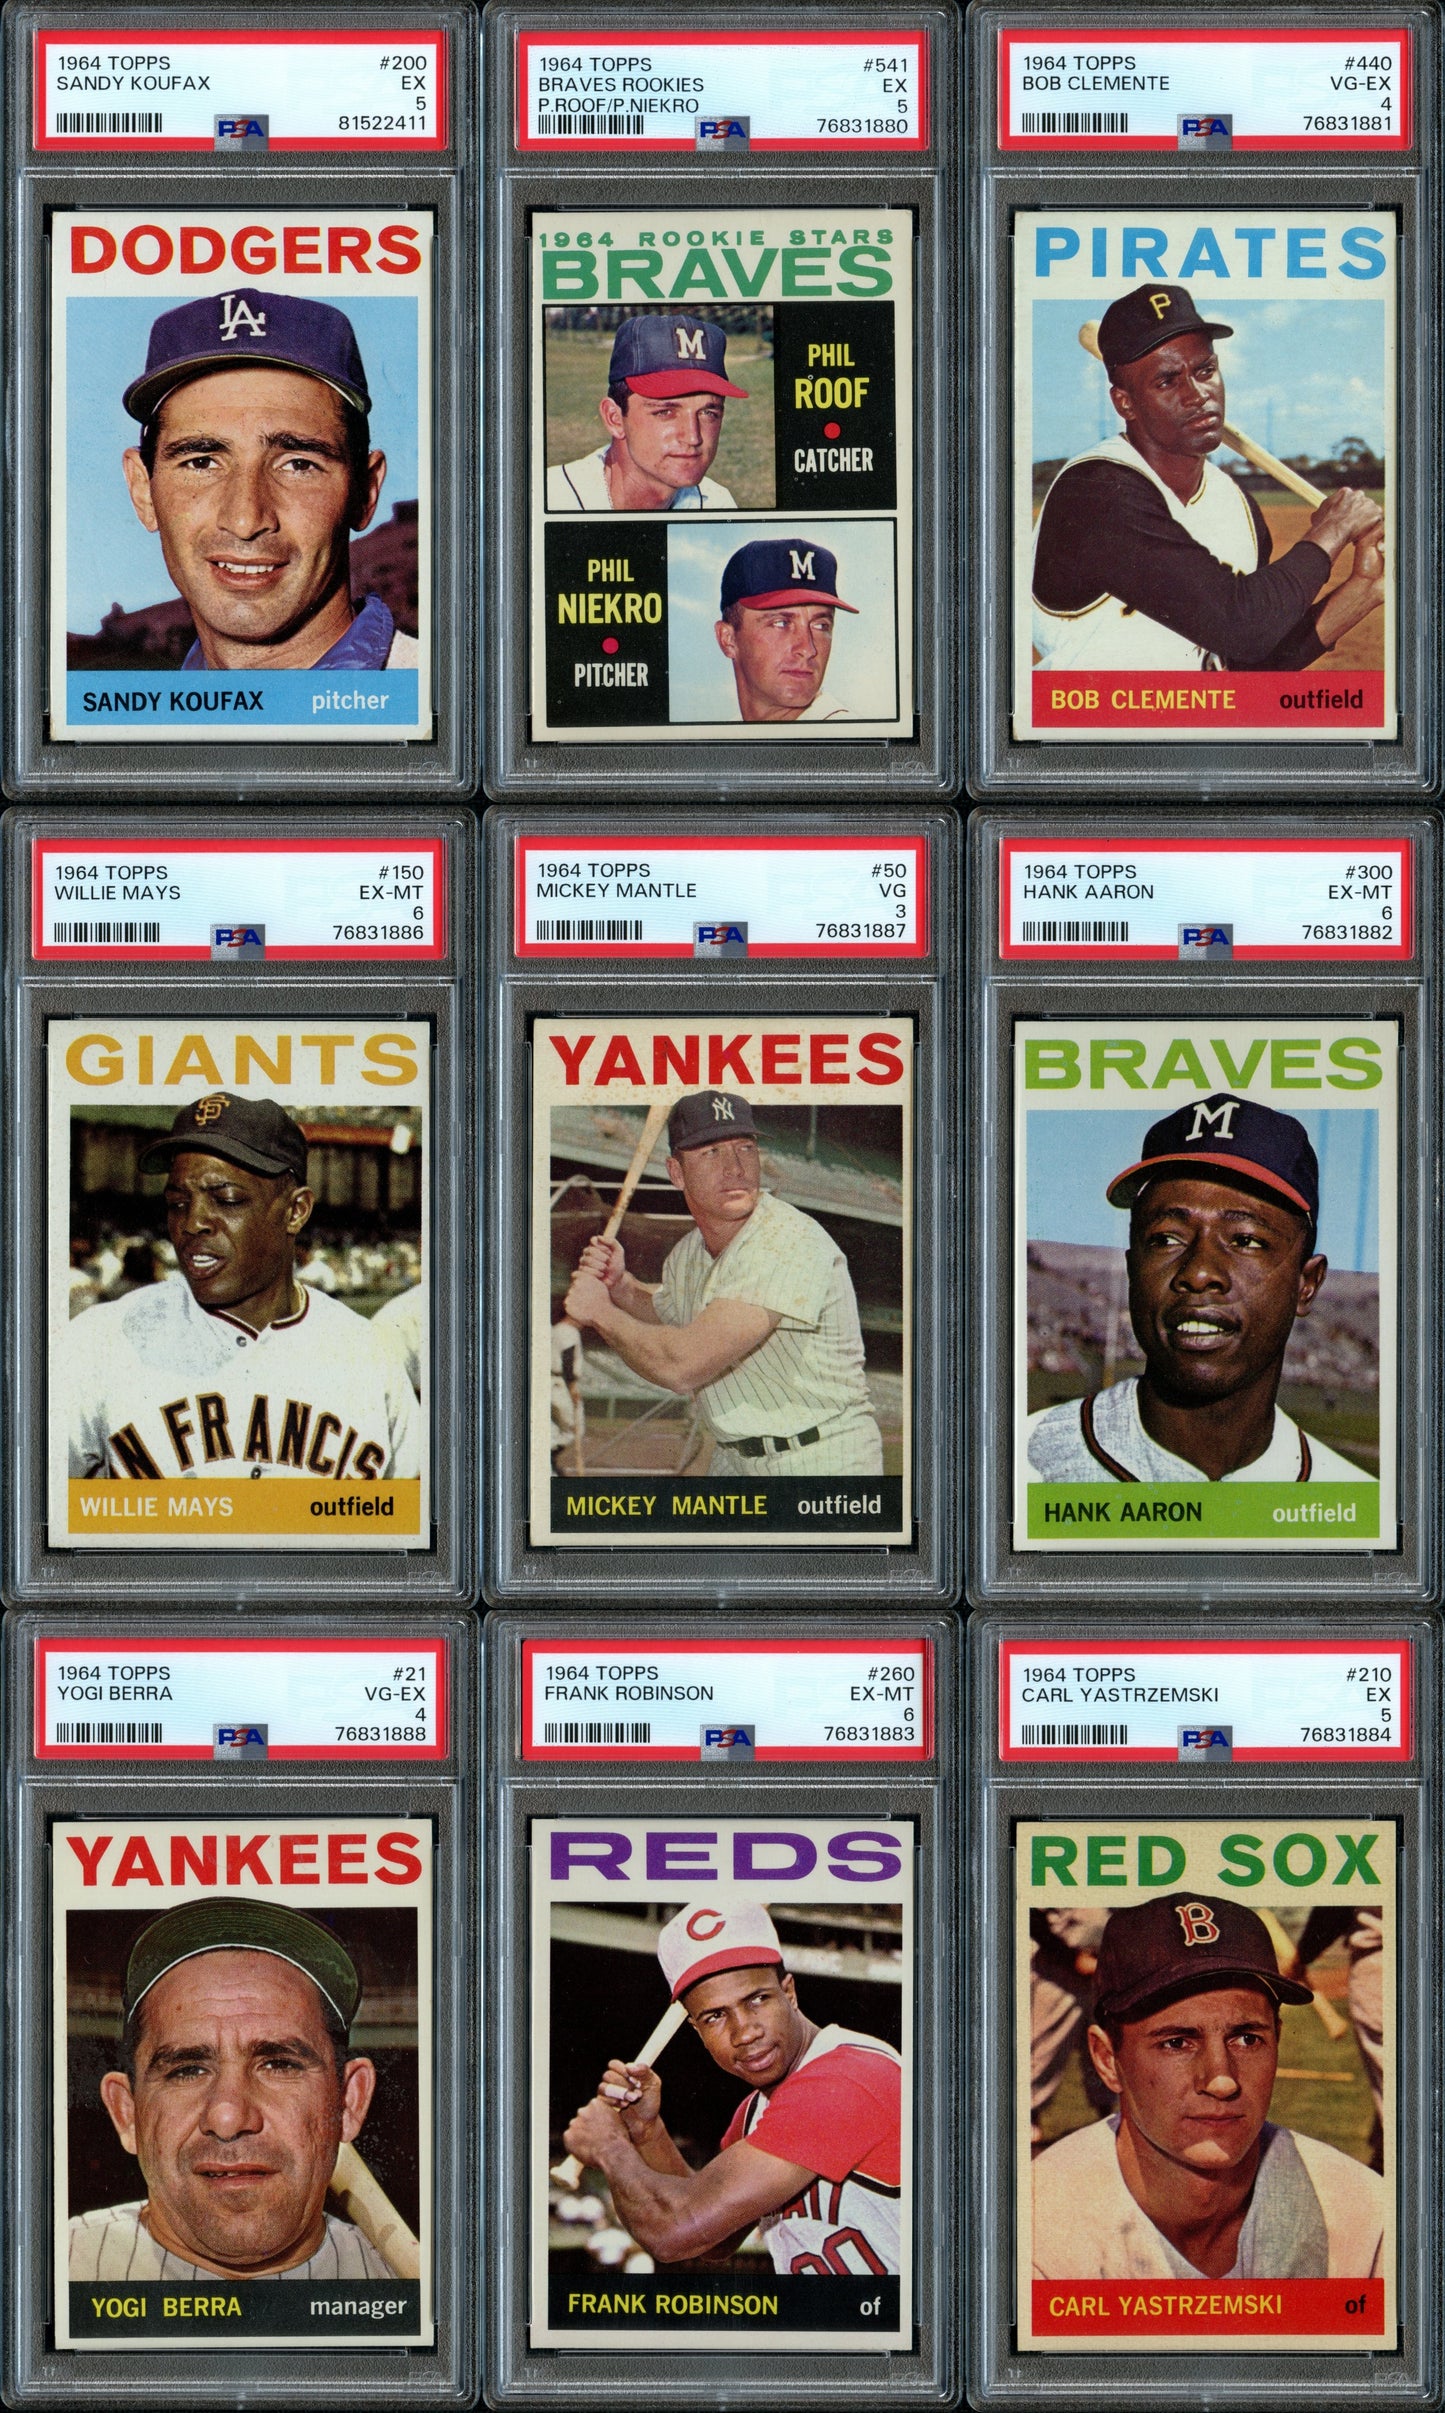 1964 Topps Baseball Set Break 587 Spot Random Card (Mickey Mantle PSA 3, Willie Mays PSA 6, Hank Aaron PSA 6, Sandy Koufax PSA 5, Phil Niekro Rookie PSA 5, etc.!)